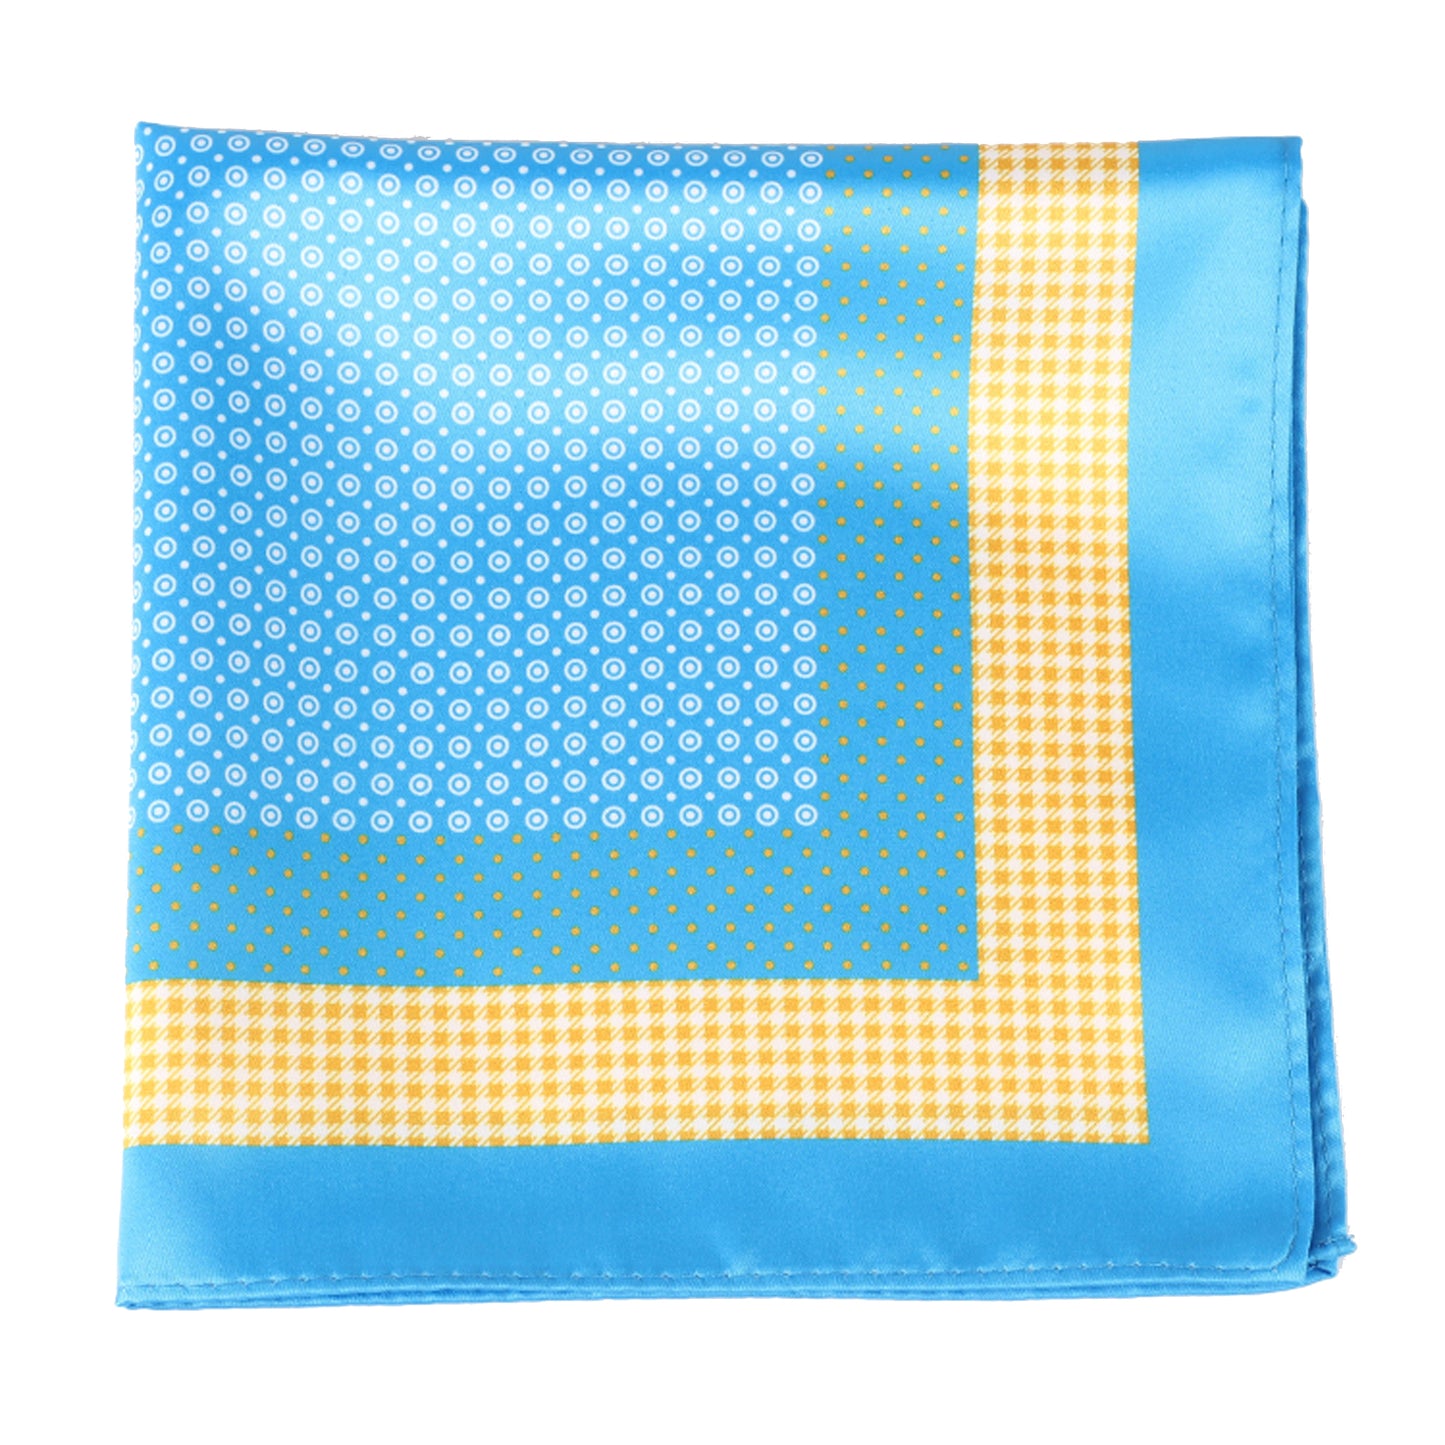 Turquoise Polka Dot Pocket Square + SquareGuard